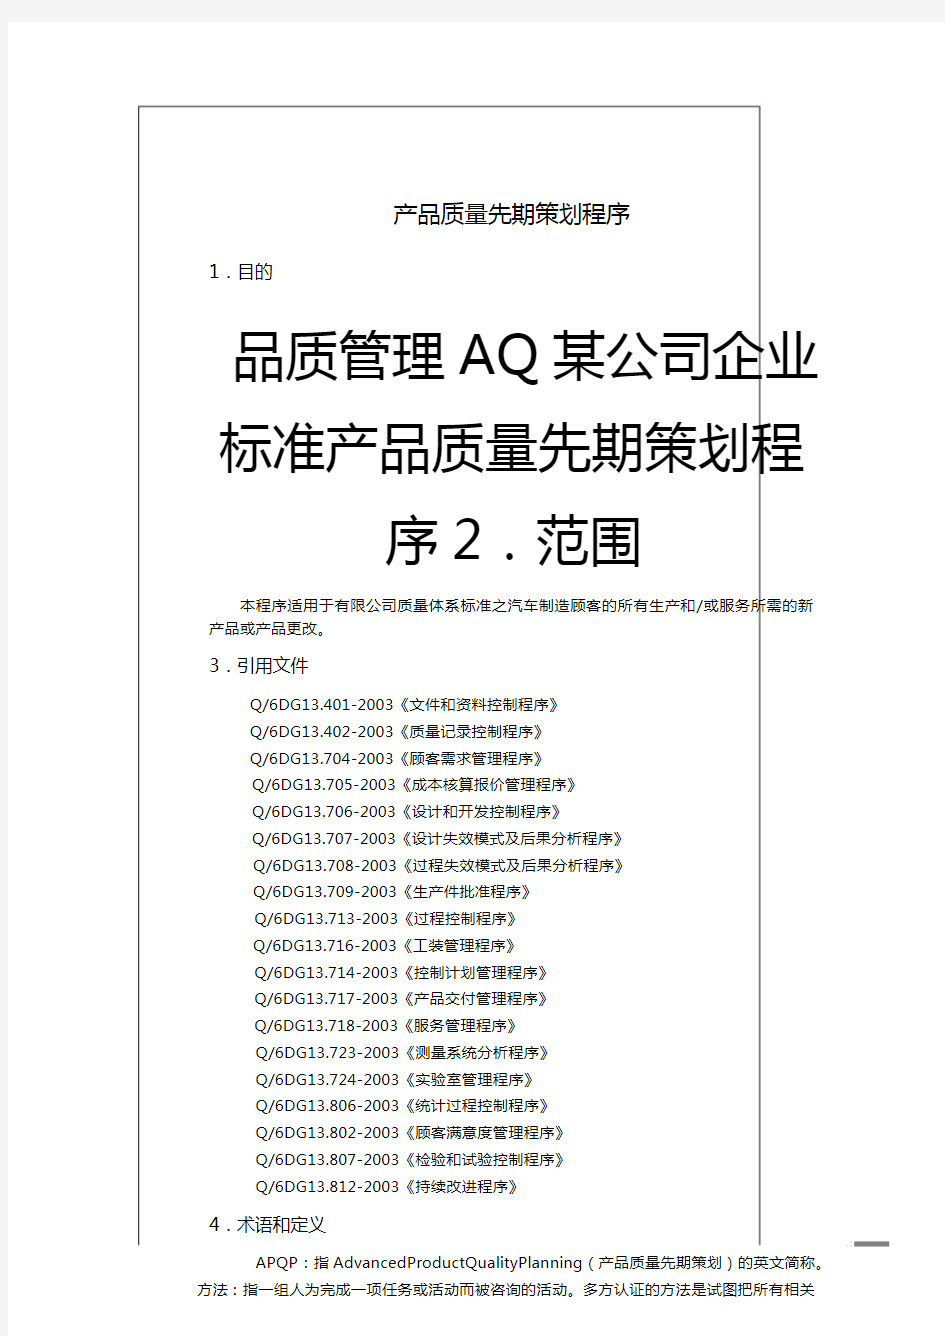 品质管理AQ某公司企业标准产品质量先期策划程序.pdf